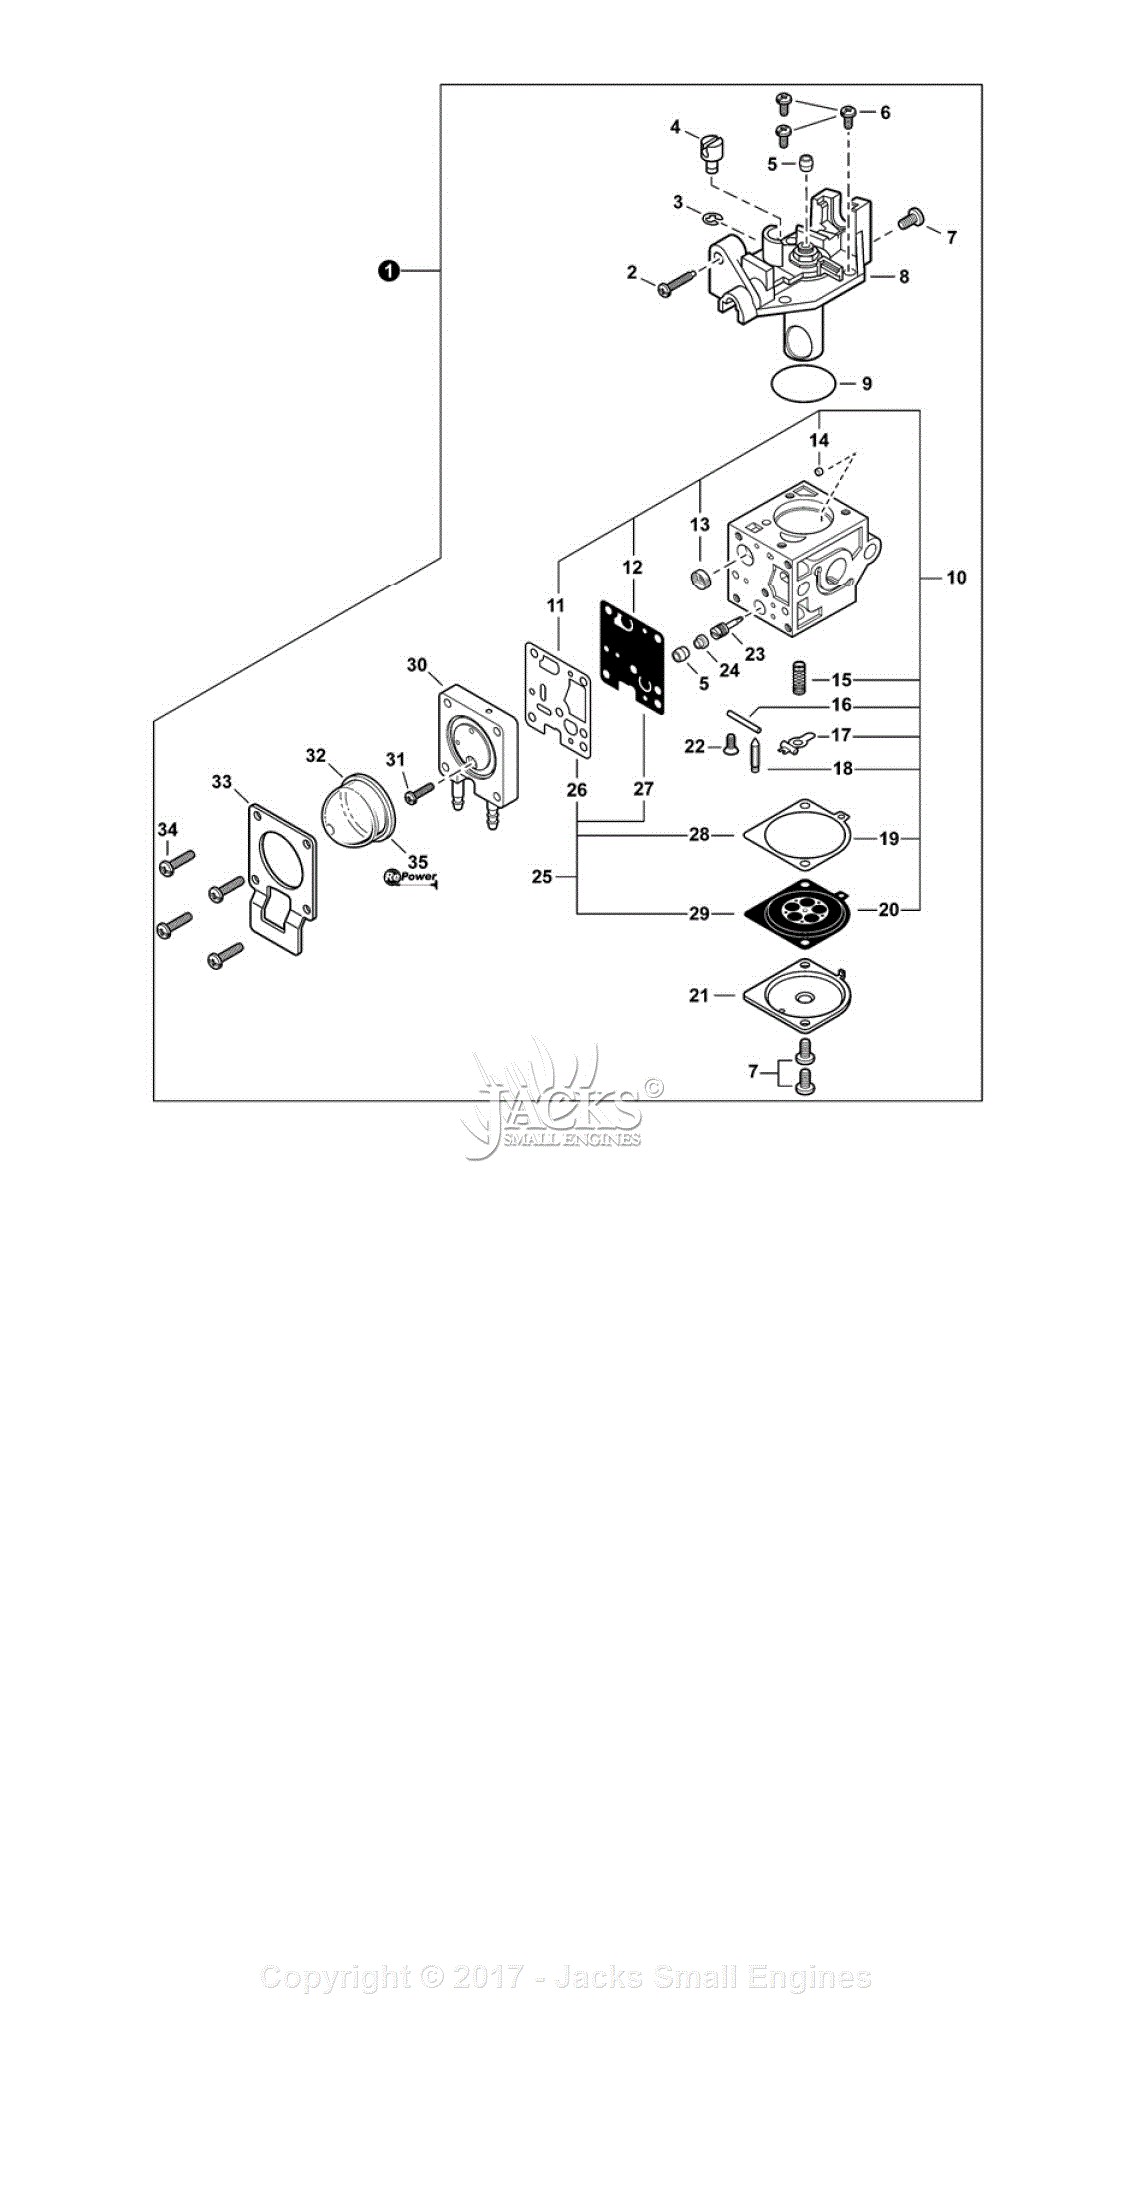 Small Engine Carburetor Parts Diagram Echo Pas 225 S N T T Parts Diagram for Of Small Engine Carburetor Parts Diagram